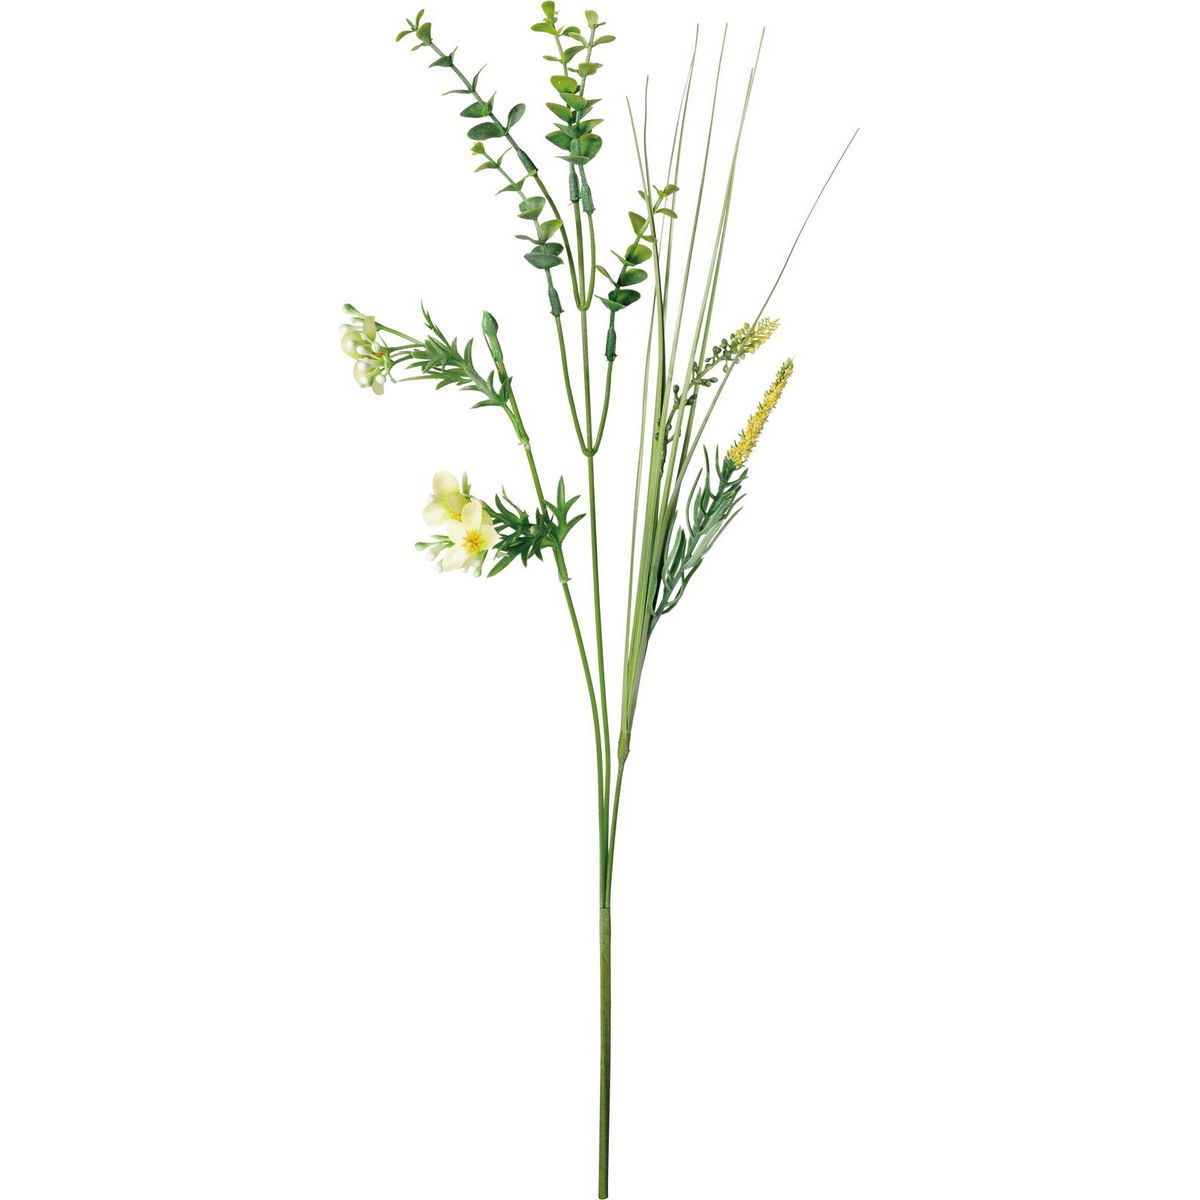 【造花】YDM/グラスユーカリミックスブッシュ ライトグリーン/FG-5084-LGR【01】【取寄】 造花（アーティフィシャルフラワー） 造花葉物、フェイクグリーン ユーカリ